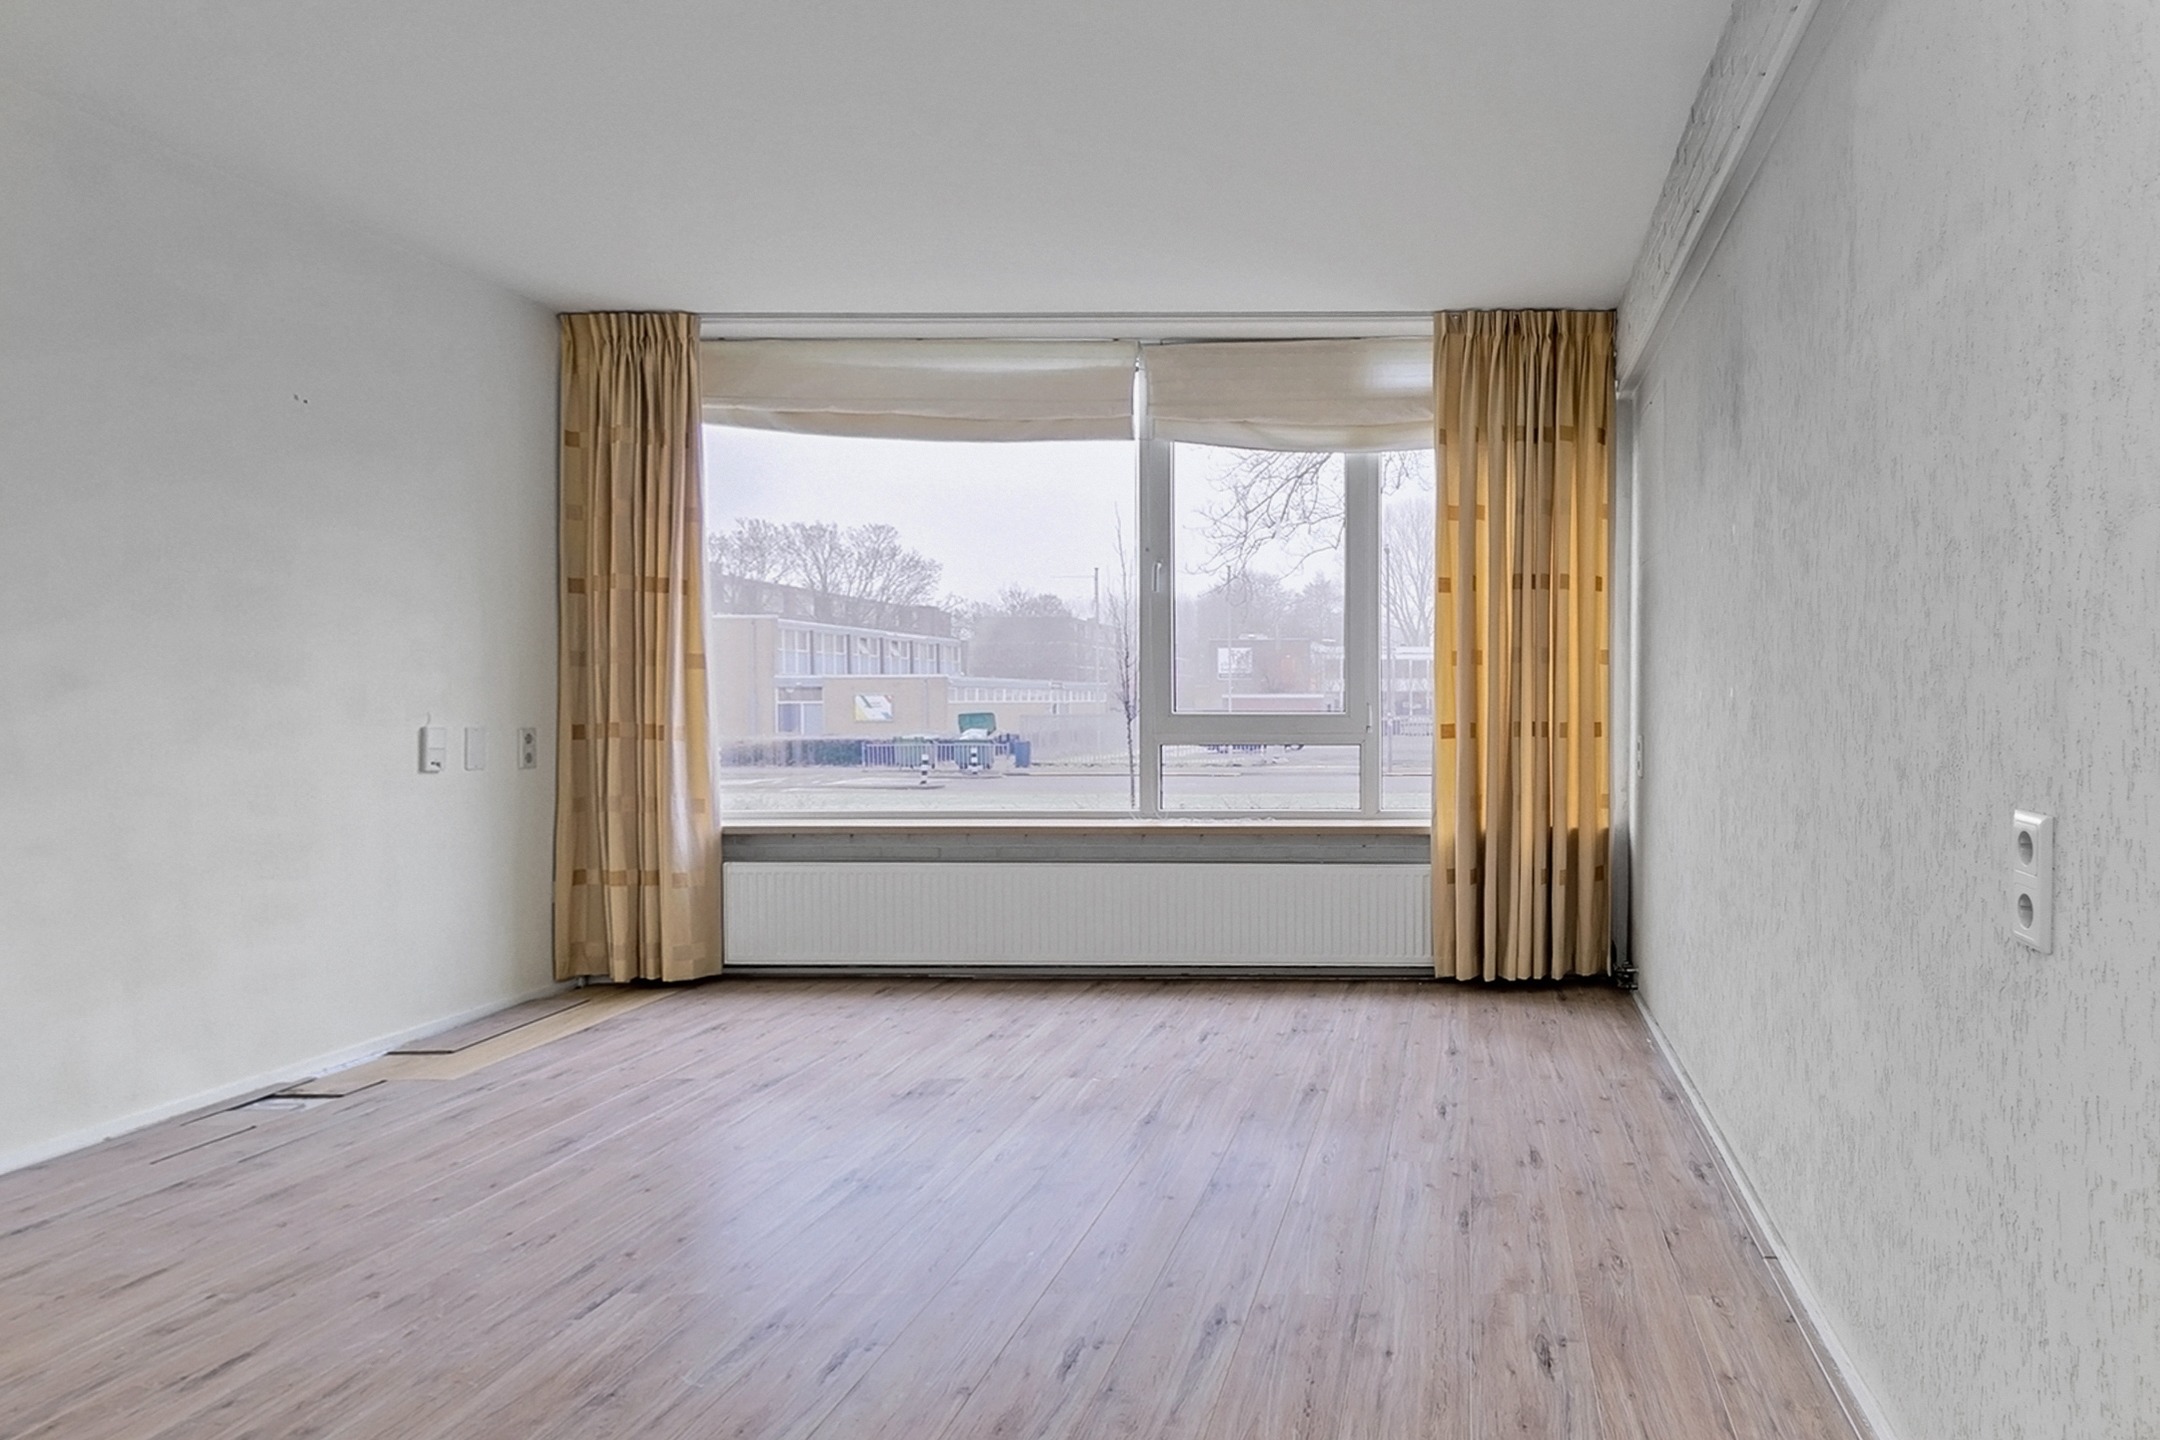 Woning / appartement - Rotterdam - Wilbertoord 249